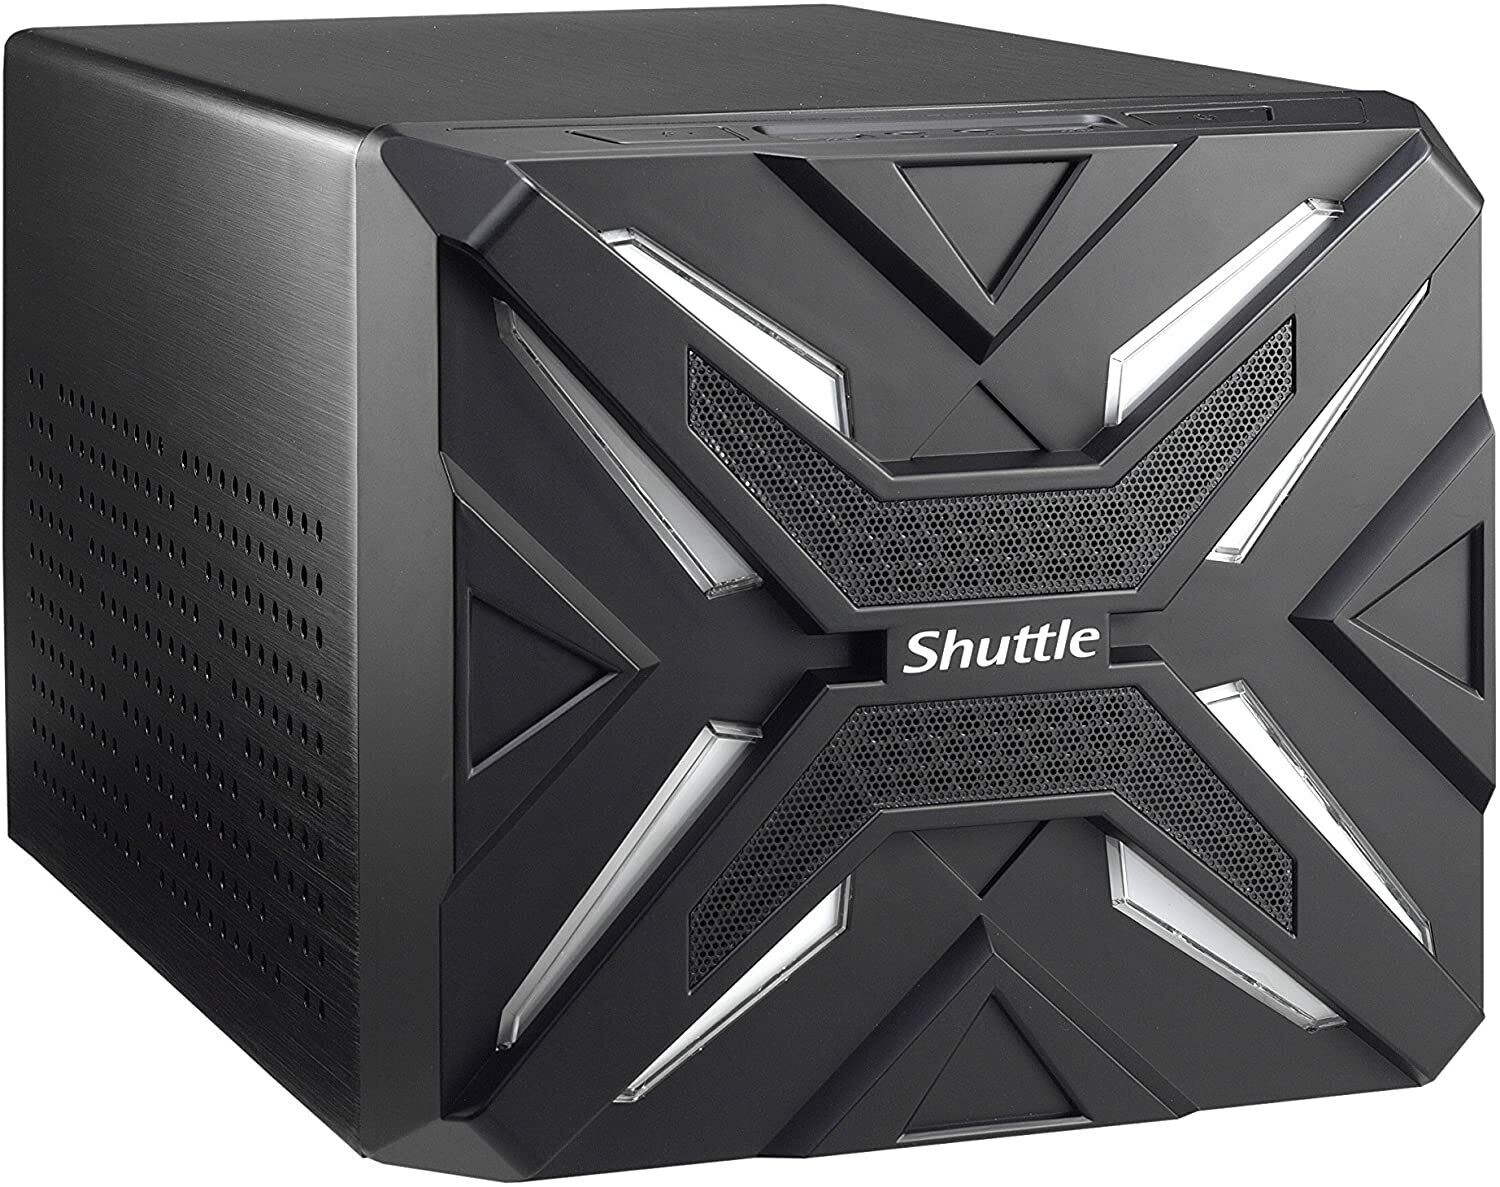 Shuttle XPC SZ270R9 Mini Barebone PC 500W PSU NO CPU NO RAM NO HDD/SDD NO OS